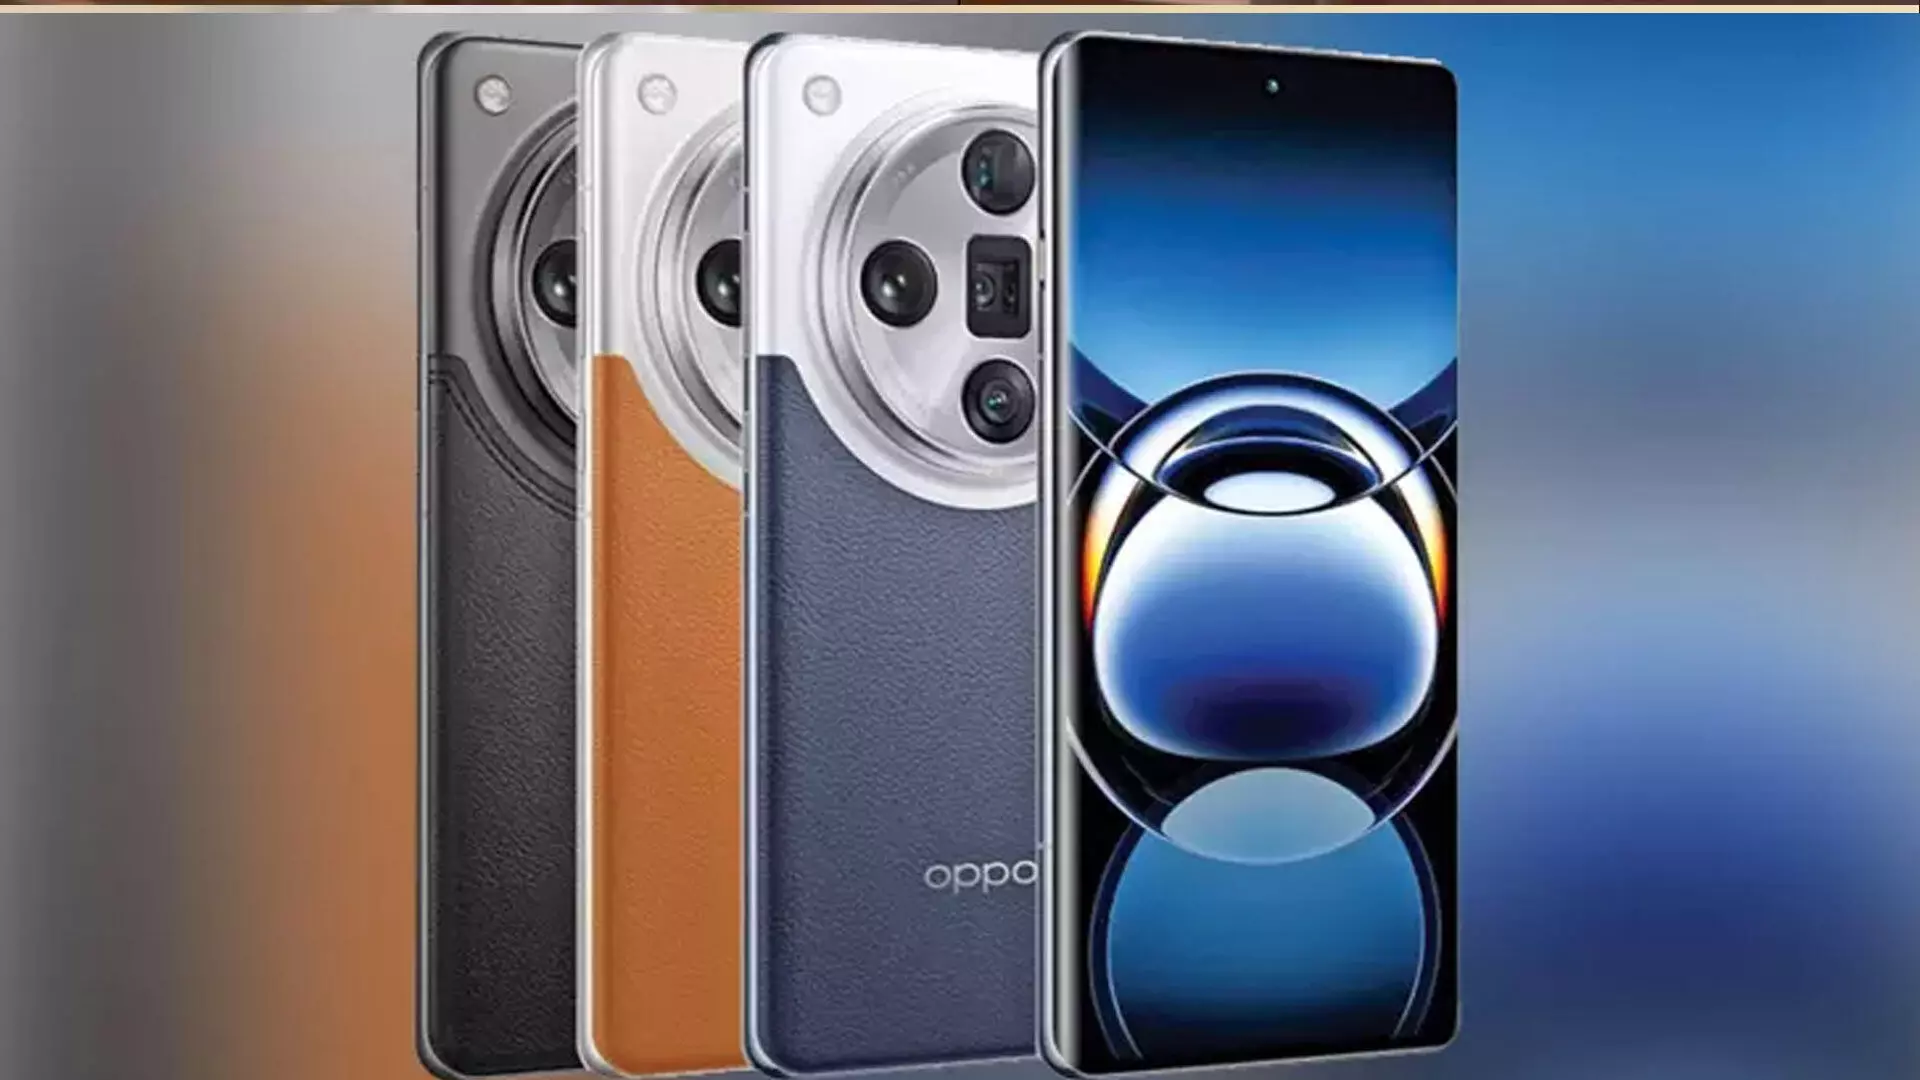 ओप्पो की फाइंड एक्स7 अल्ट्रा समीक्षा: सबसे अच्छा अल्ट्रा कैमरा फोन